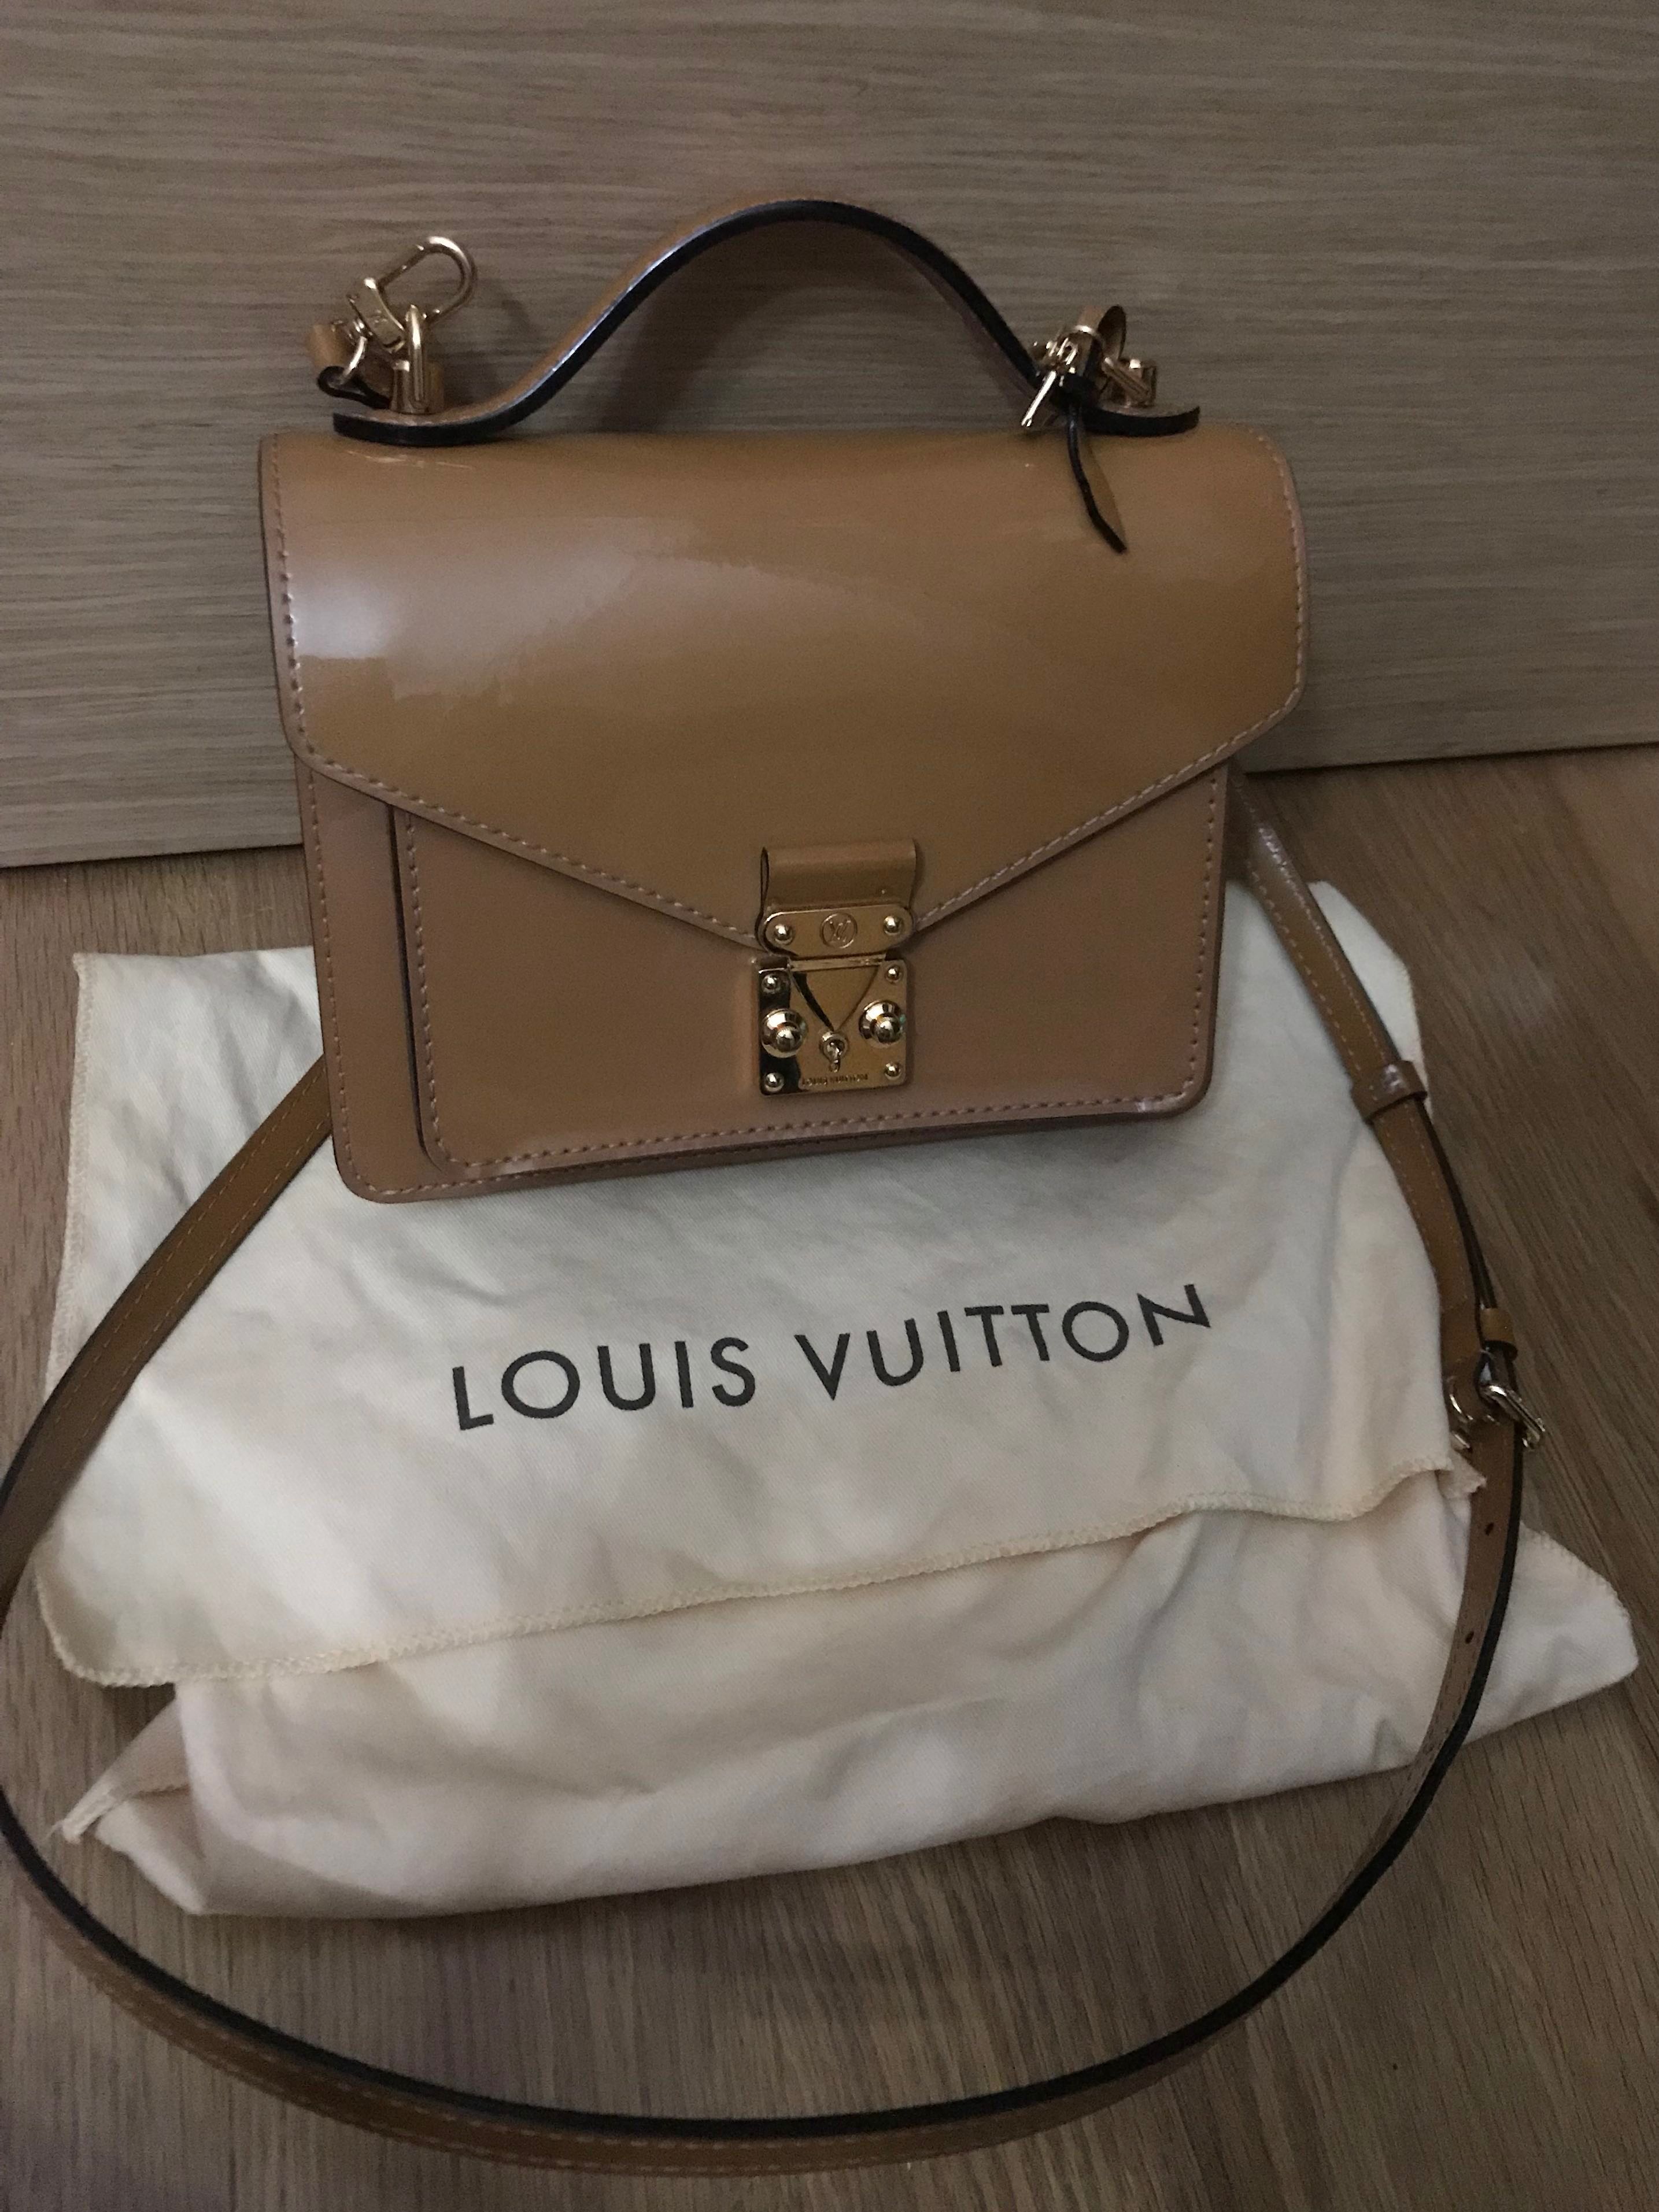 Louis Vuitton Monceau BB